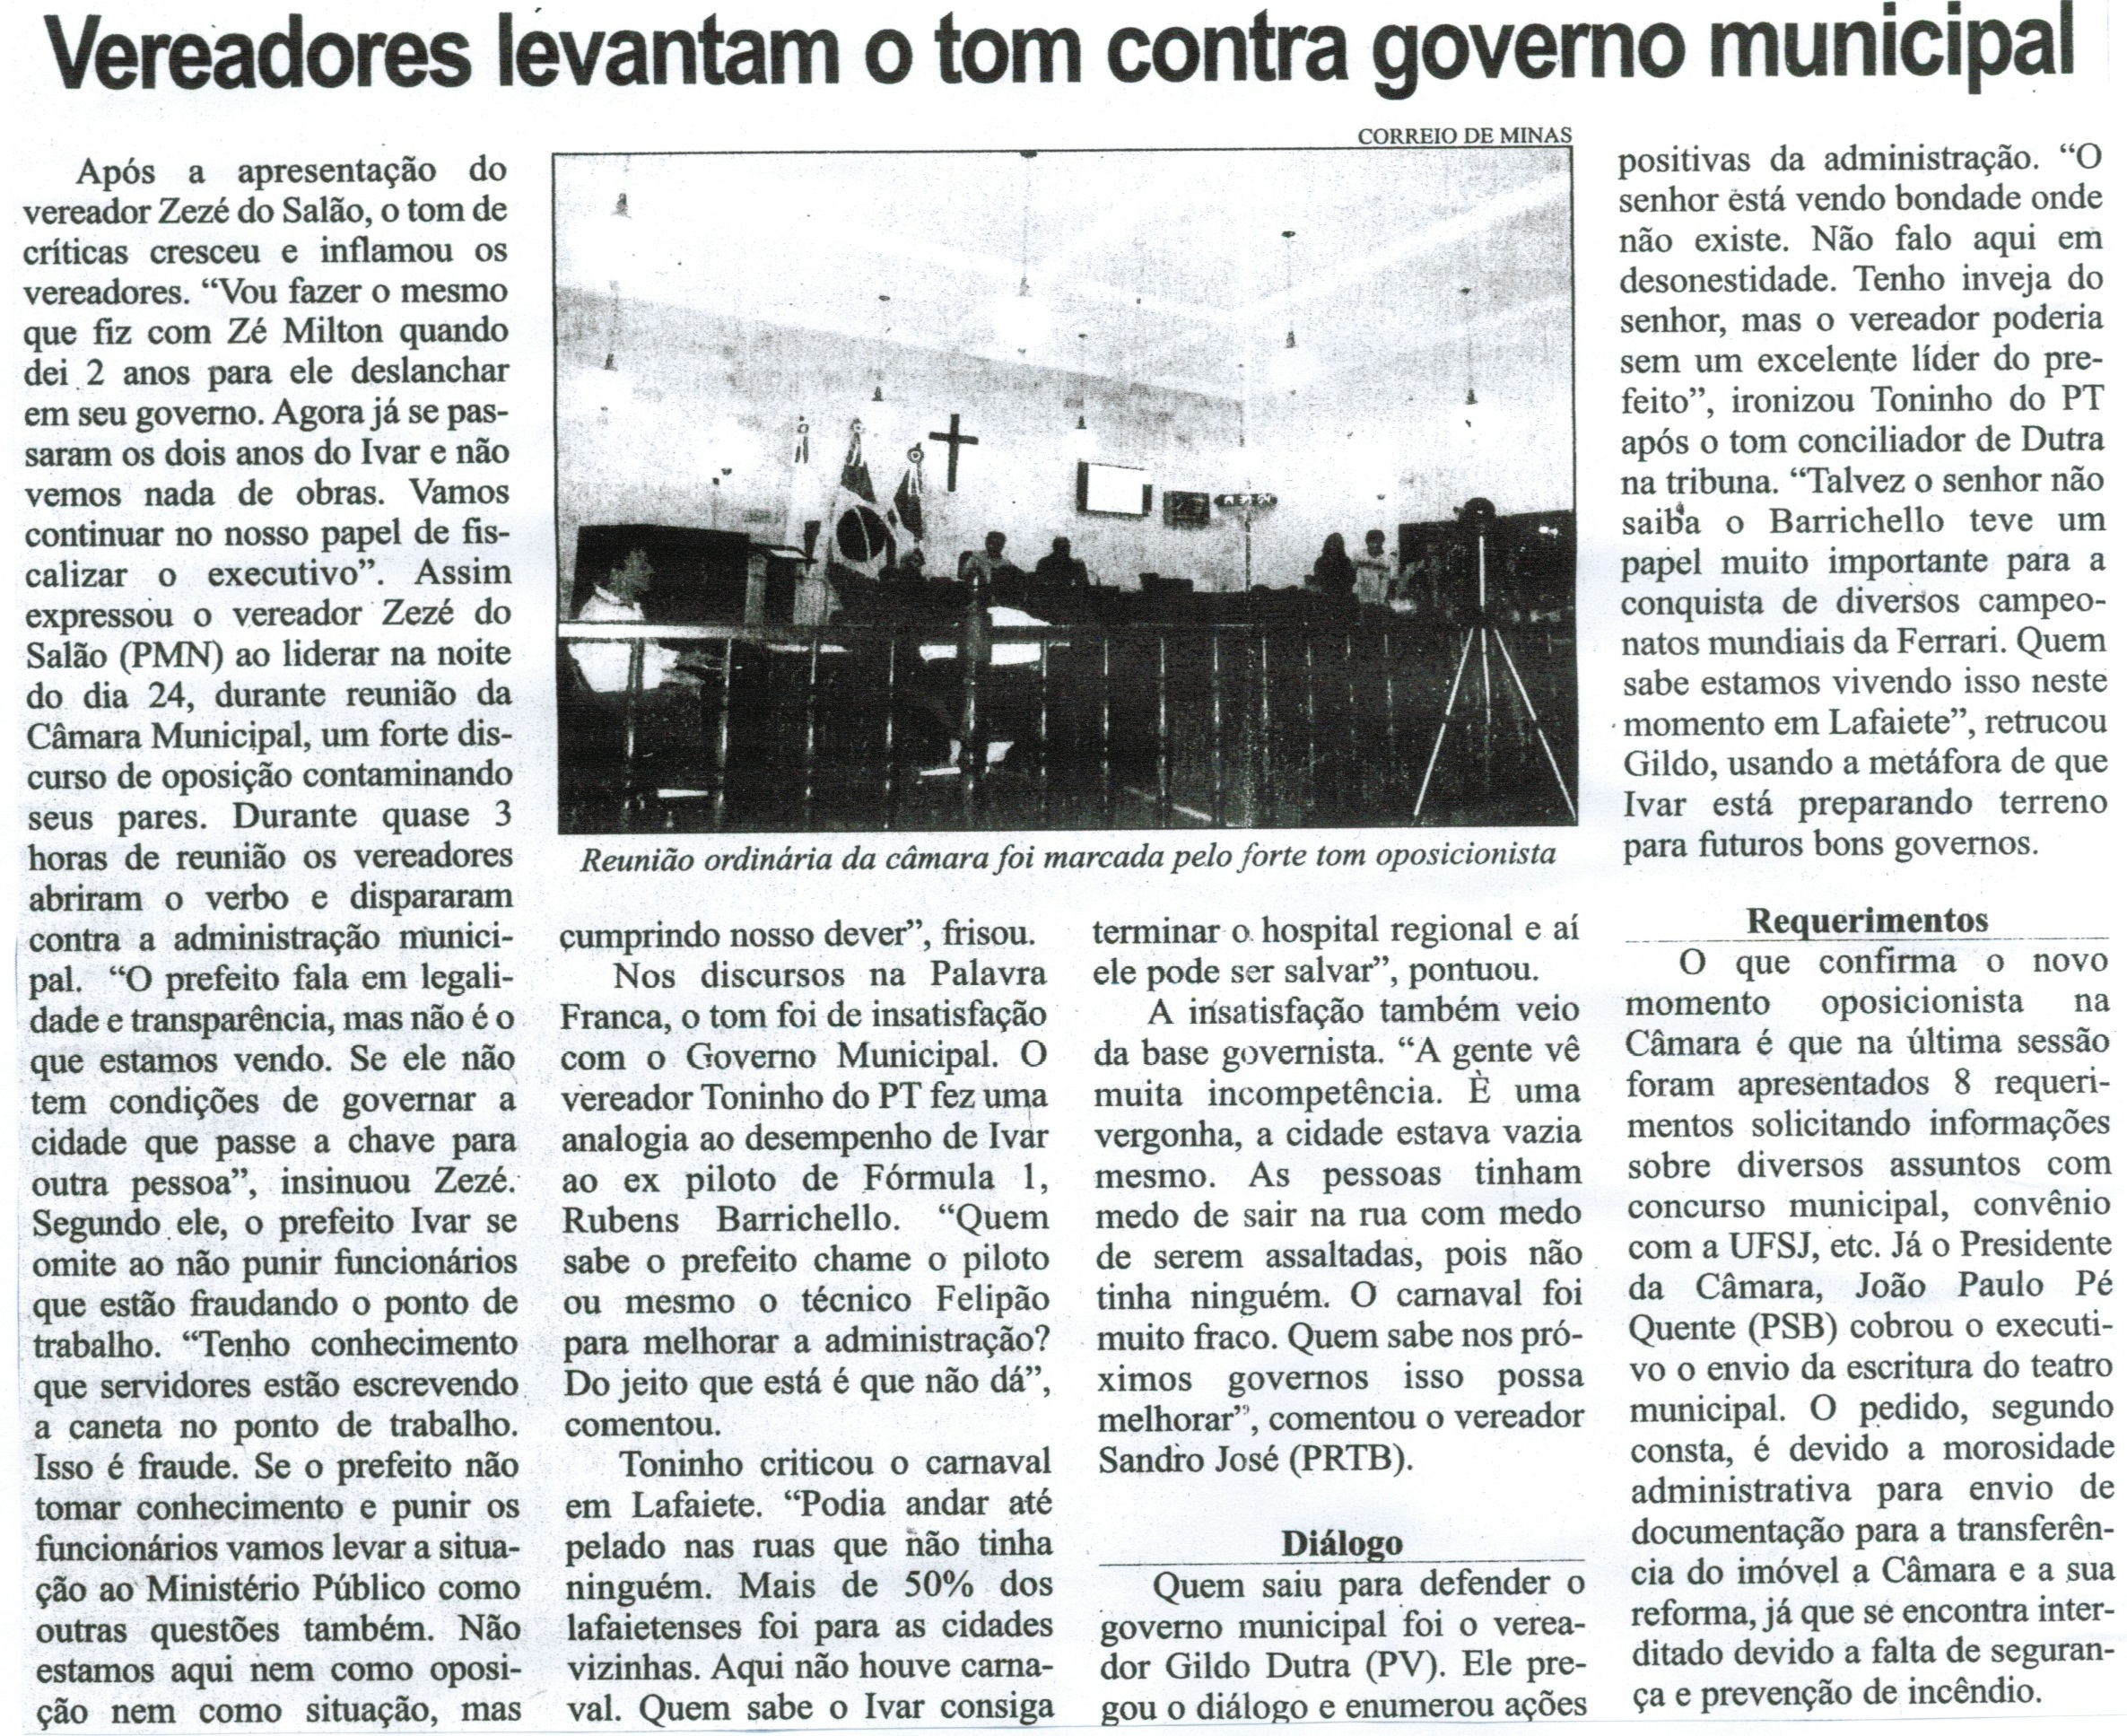 Vereadores levantam o tom contra governo municipal. Correio de Minas, Conselheiro Lafaiete, 28 fev. 2015, p. 04.